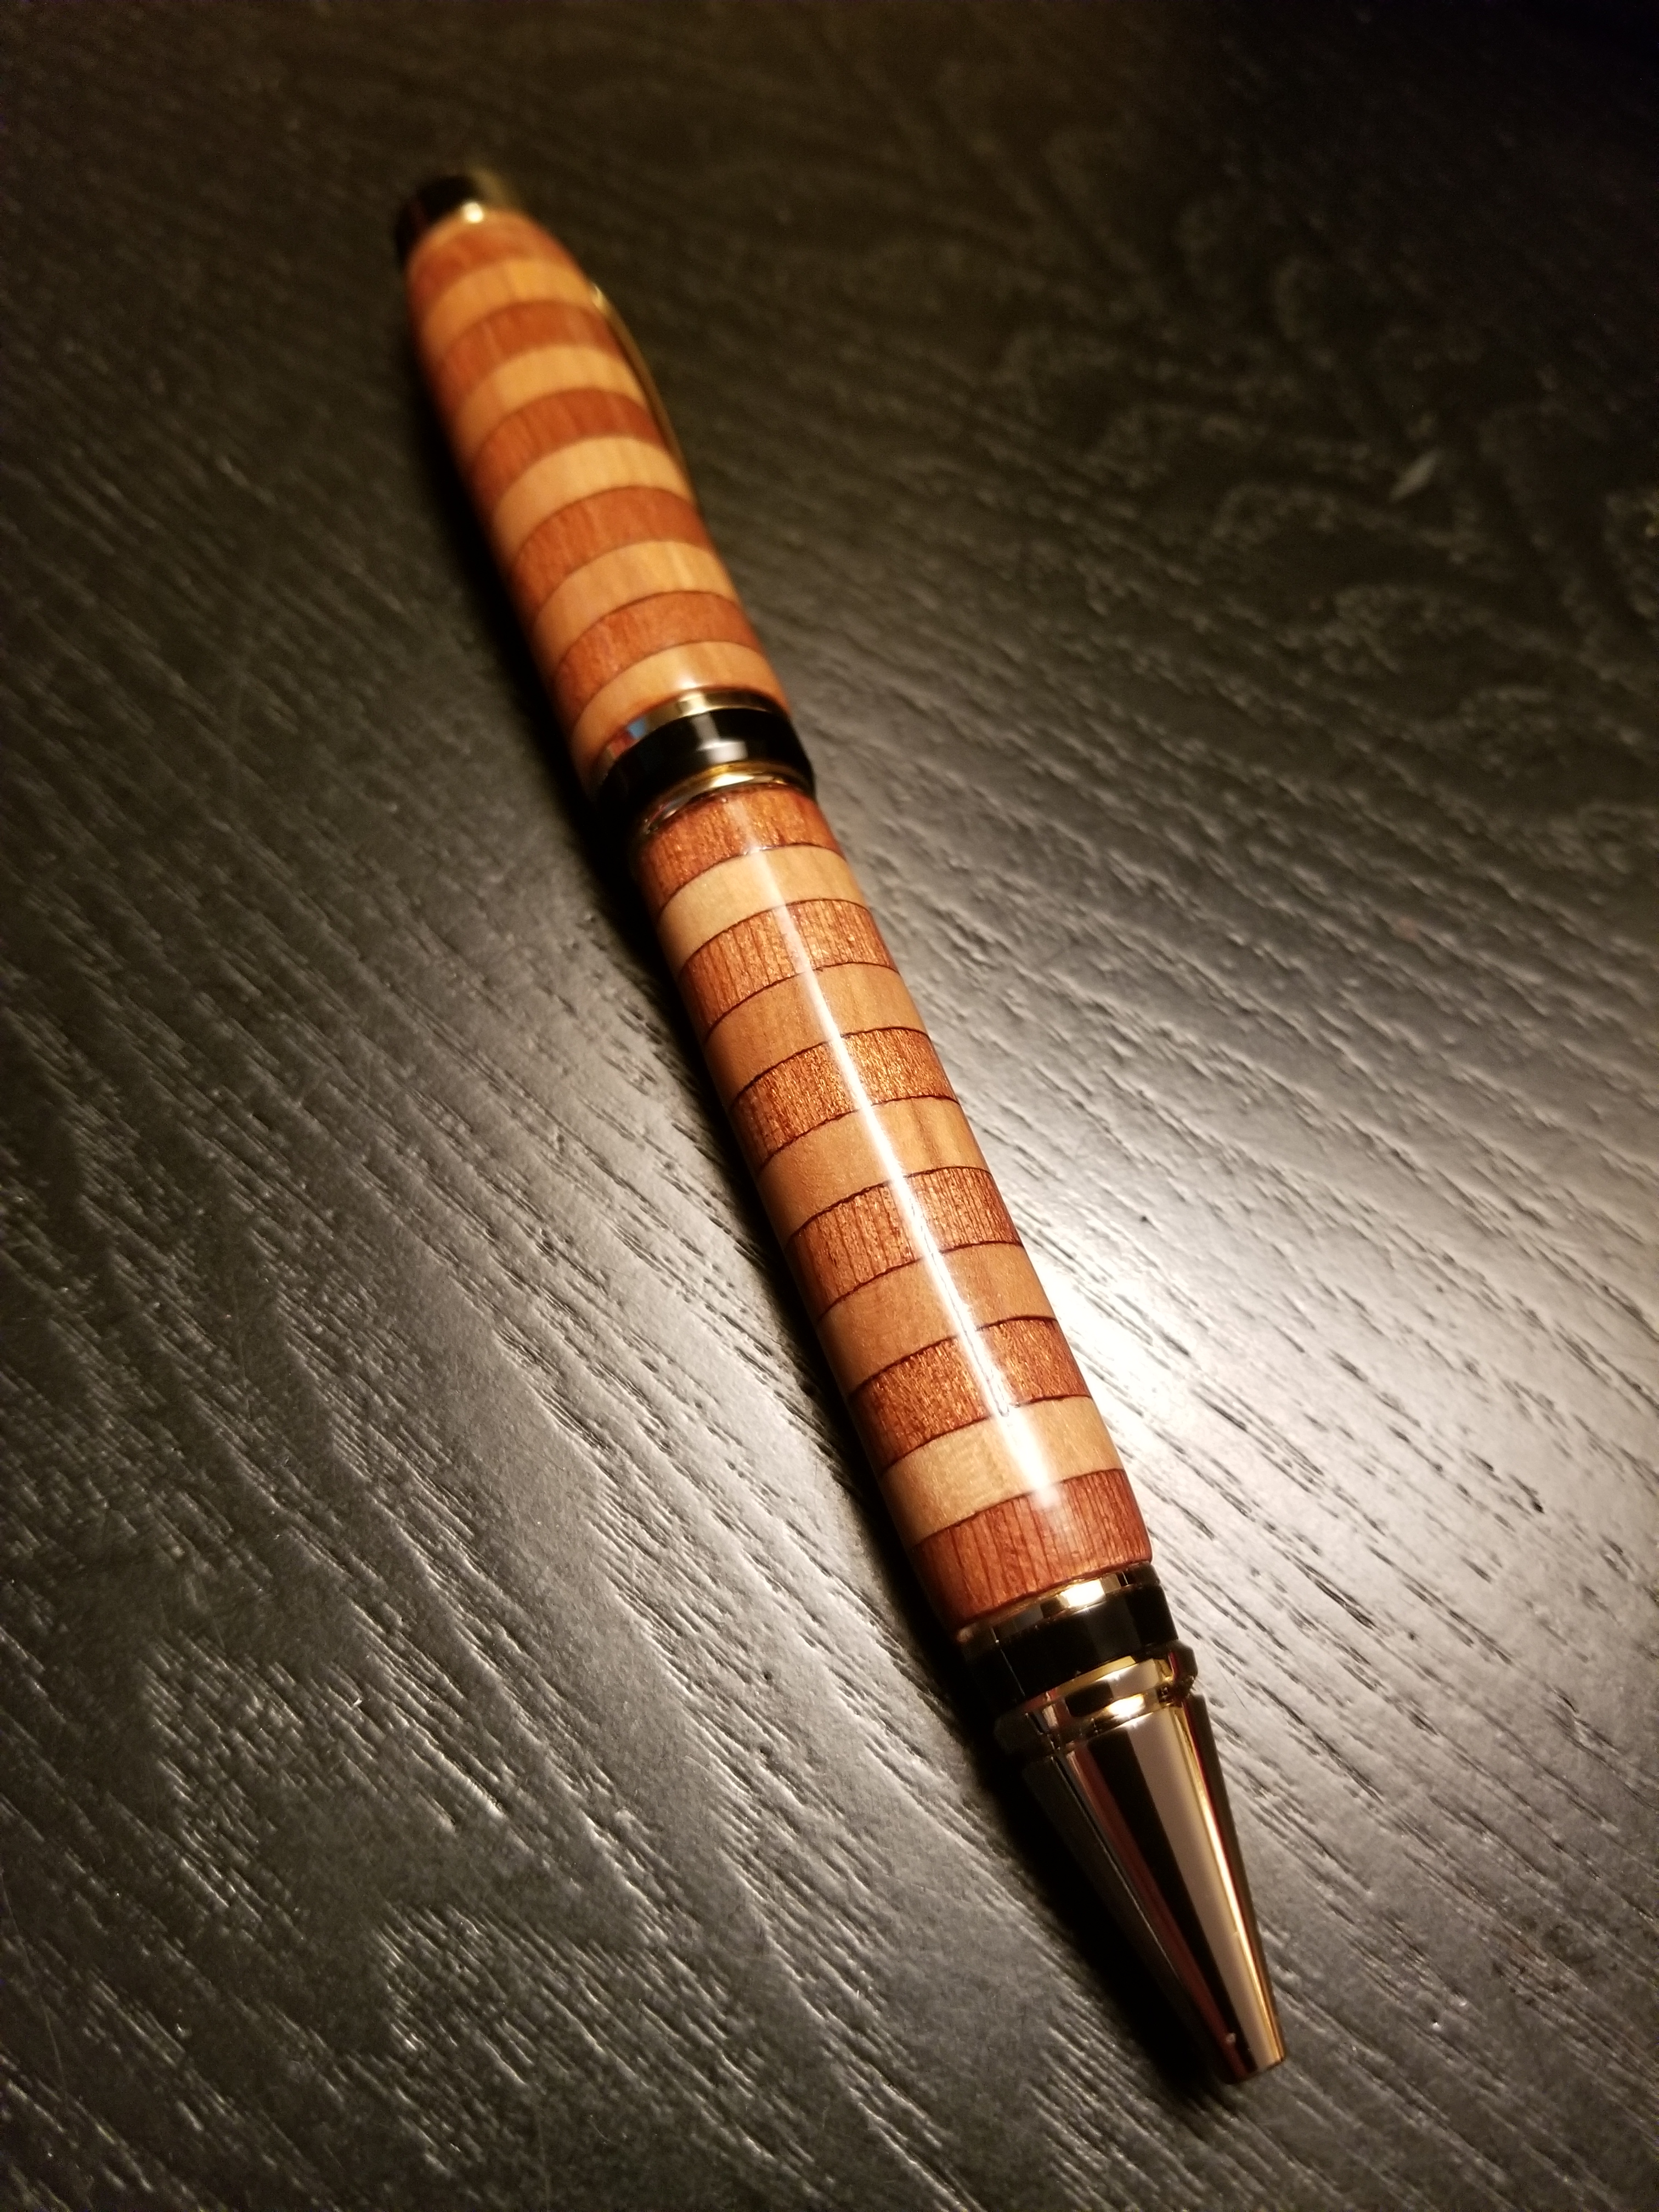 First segmented pen